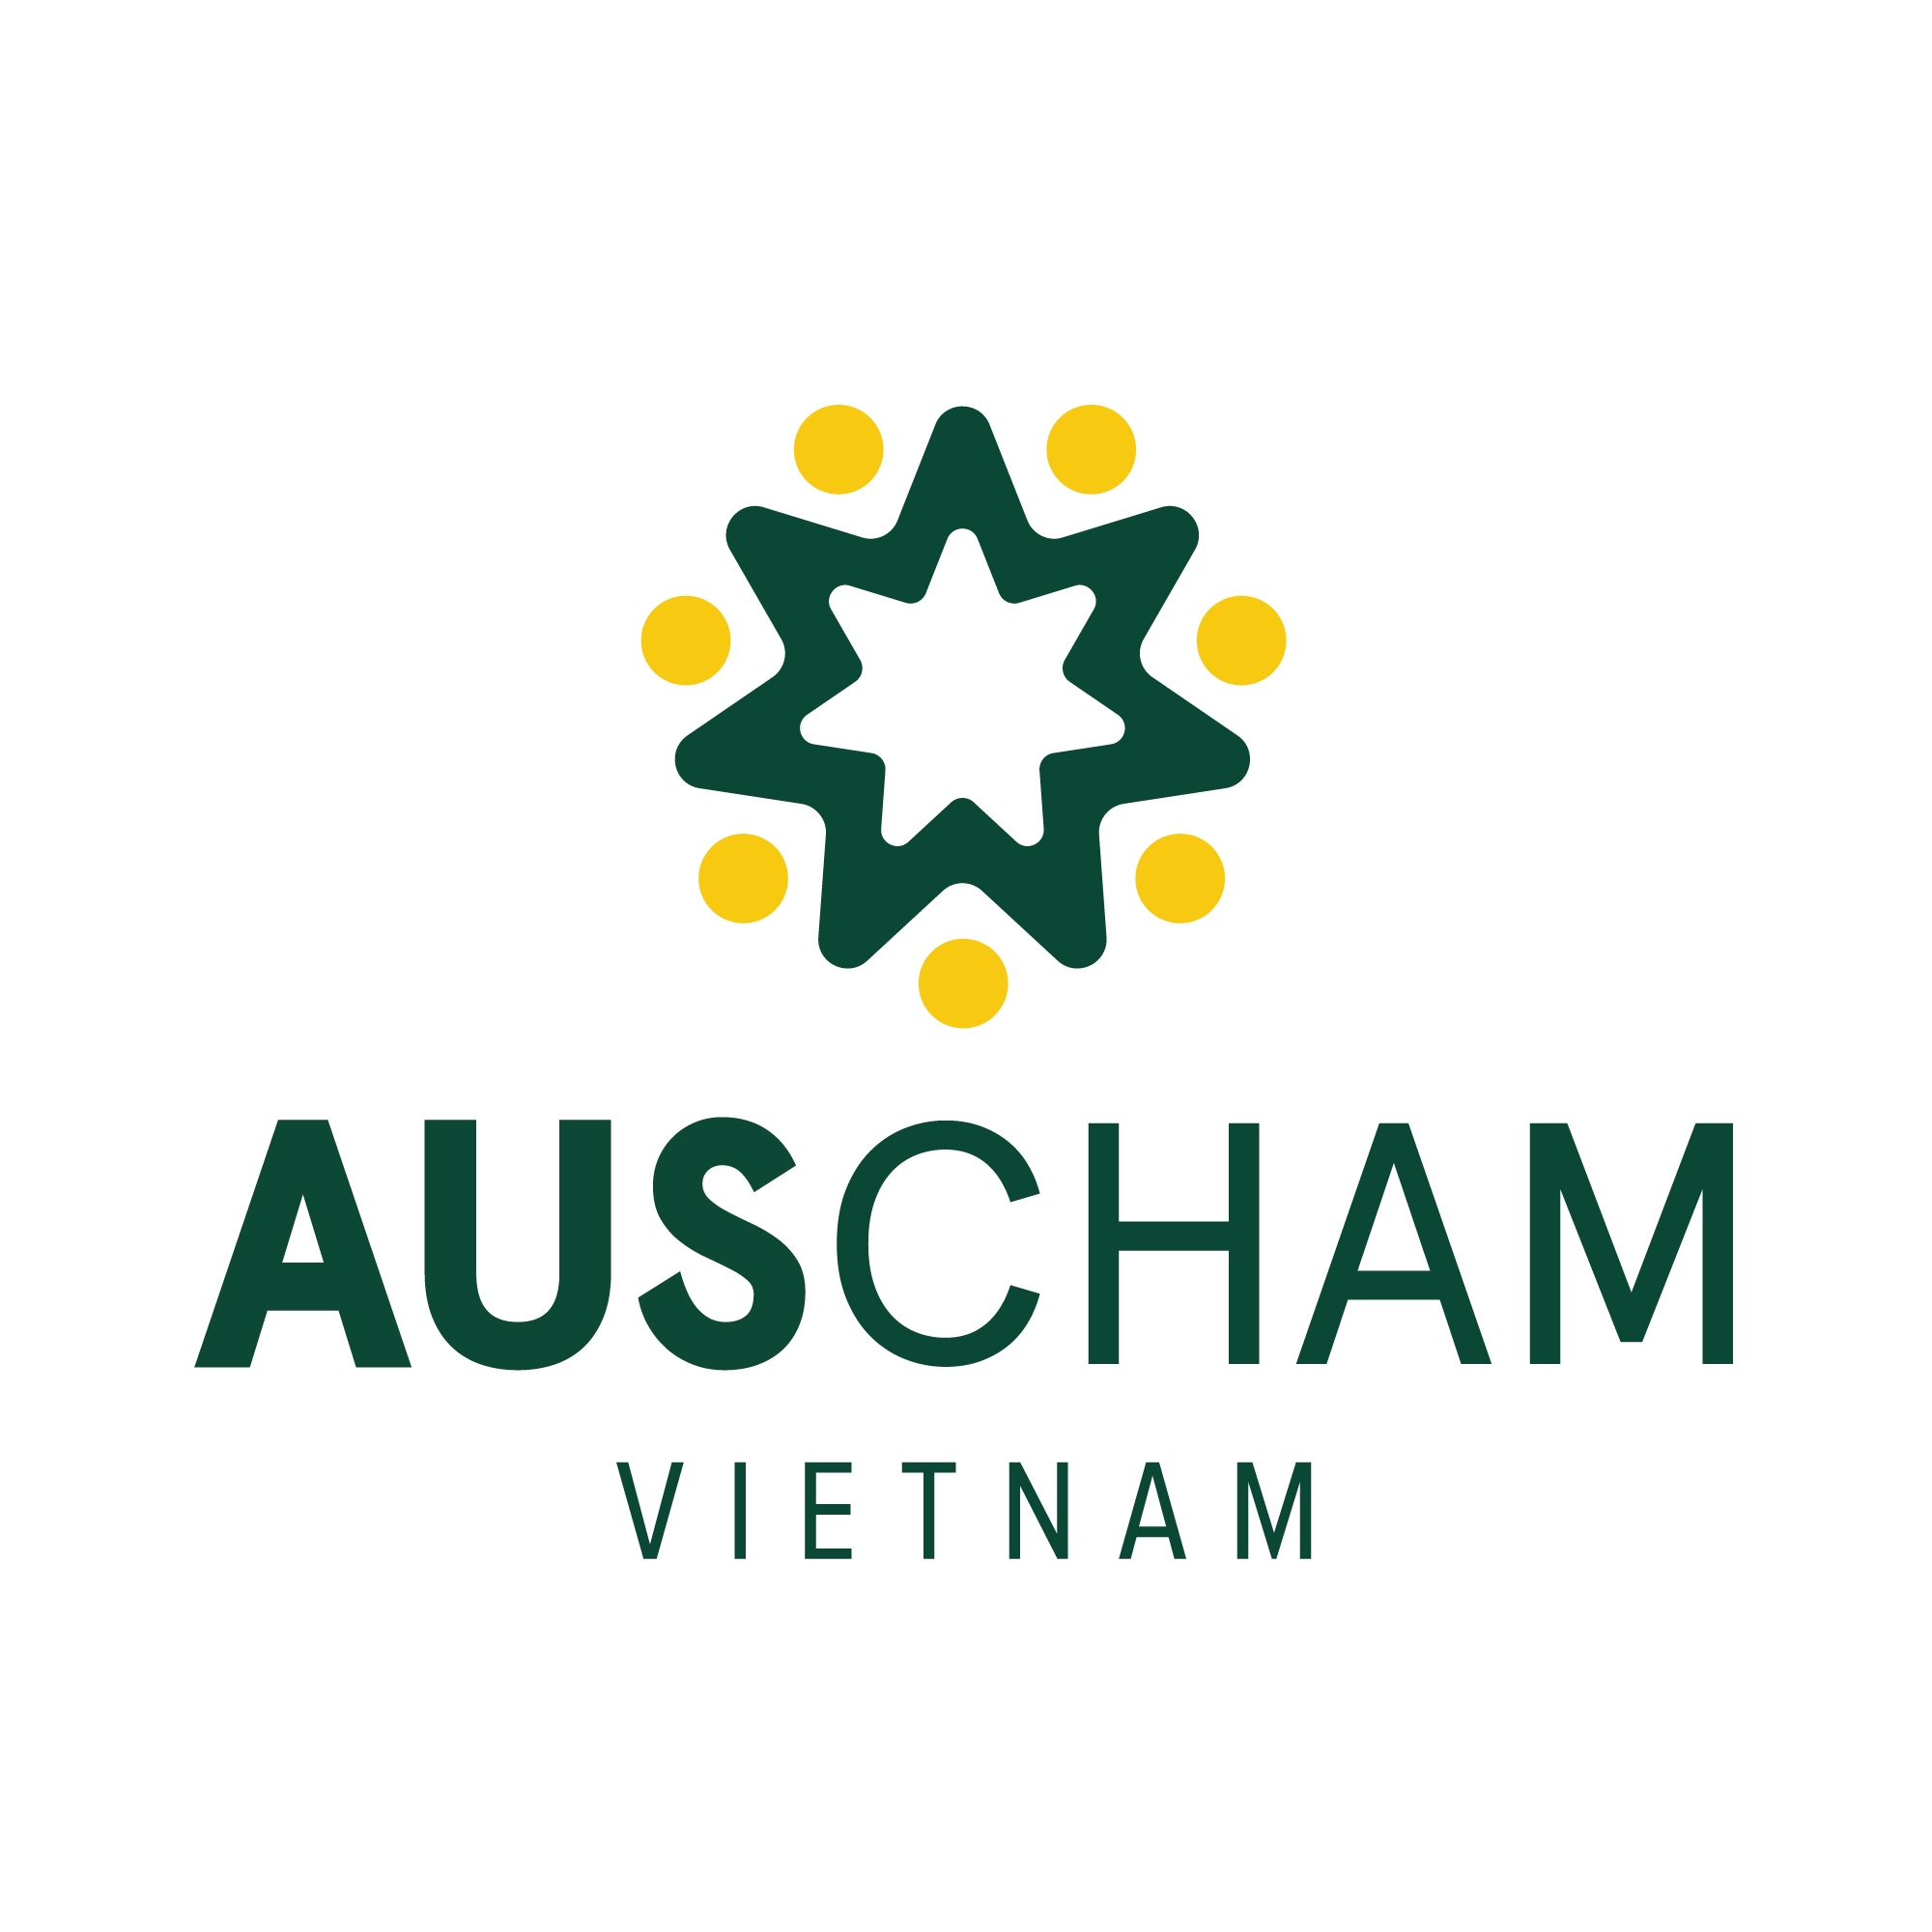 AusCham Vietnam